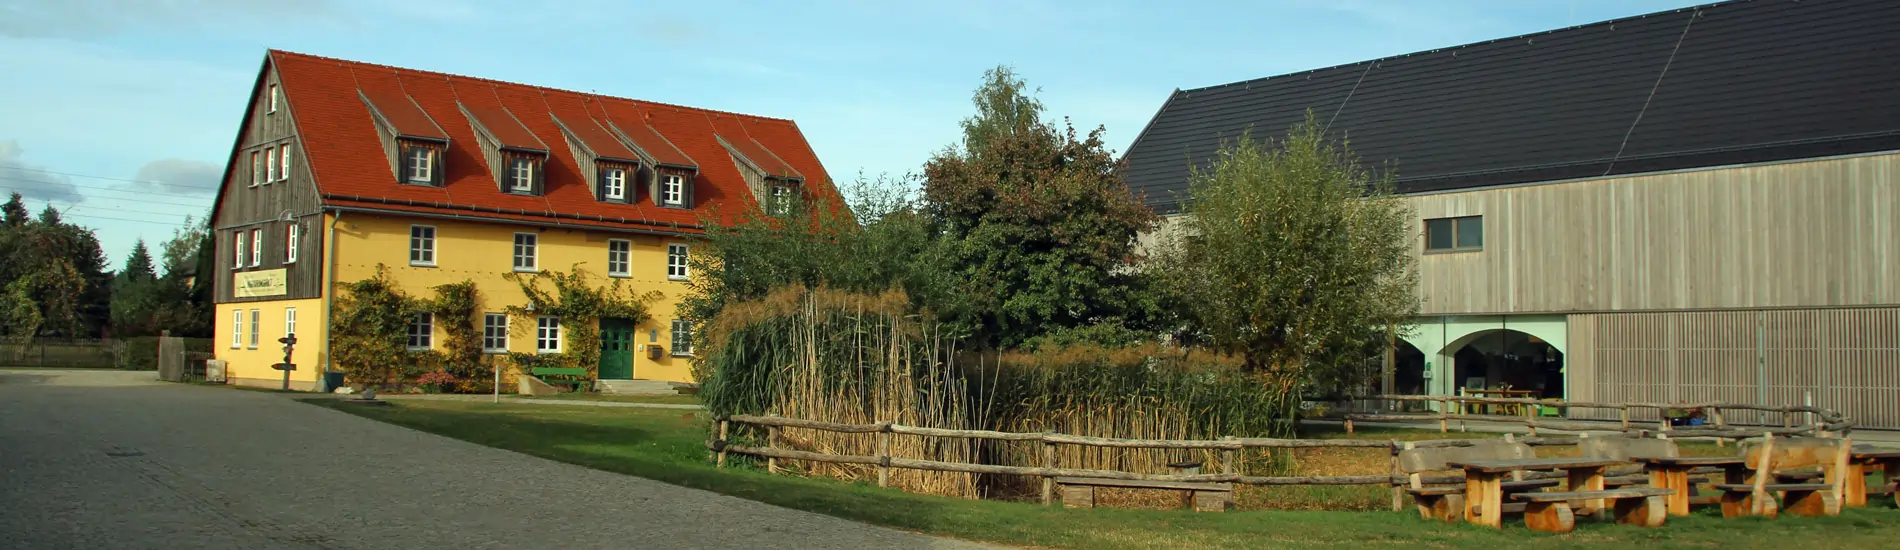 Haus Tausend Seen in der Lausitz